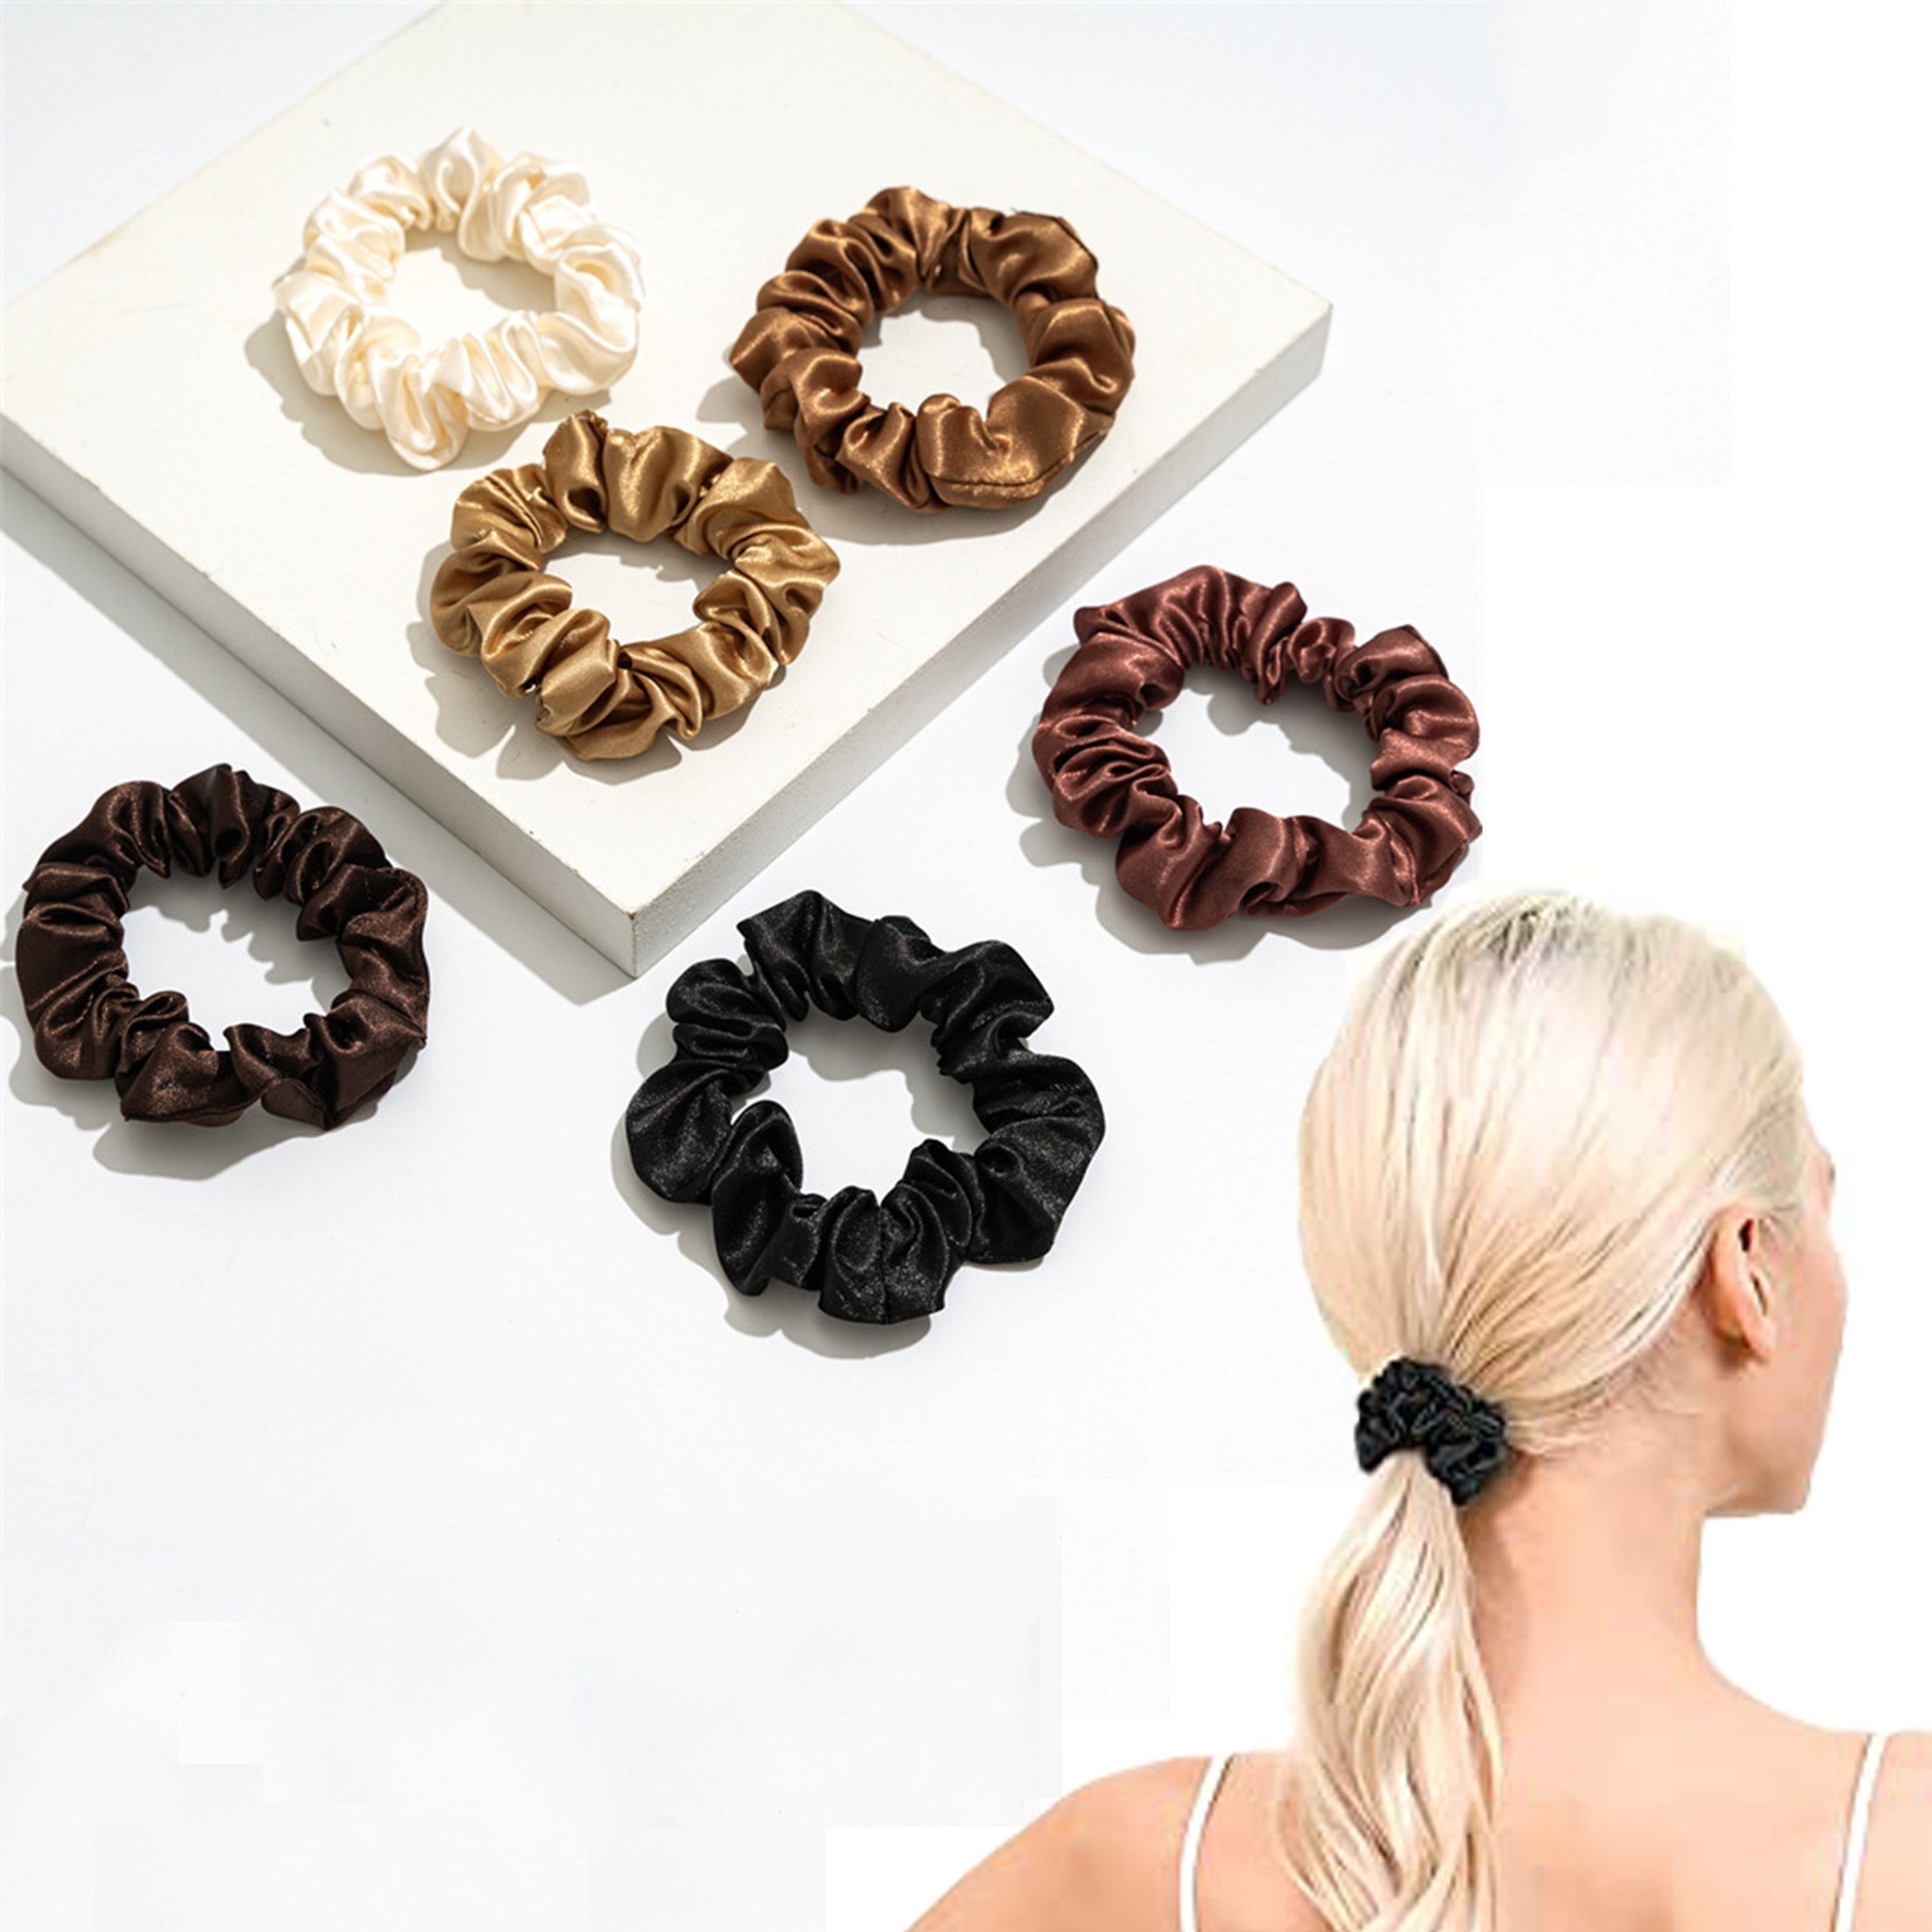 Viellan Diadem Satin-Haarband 6er-Set Bubble Hair Ring für Mädchen Damen,6 Farben